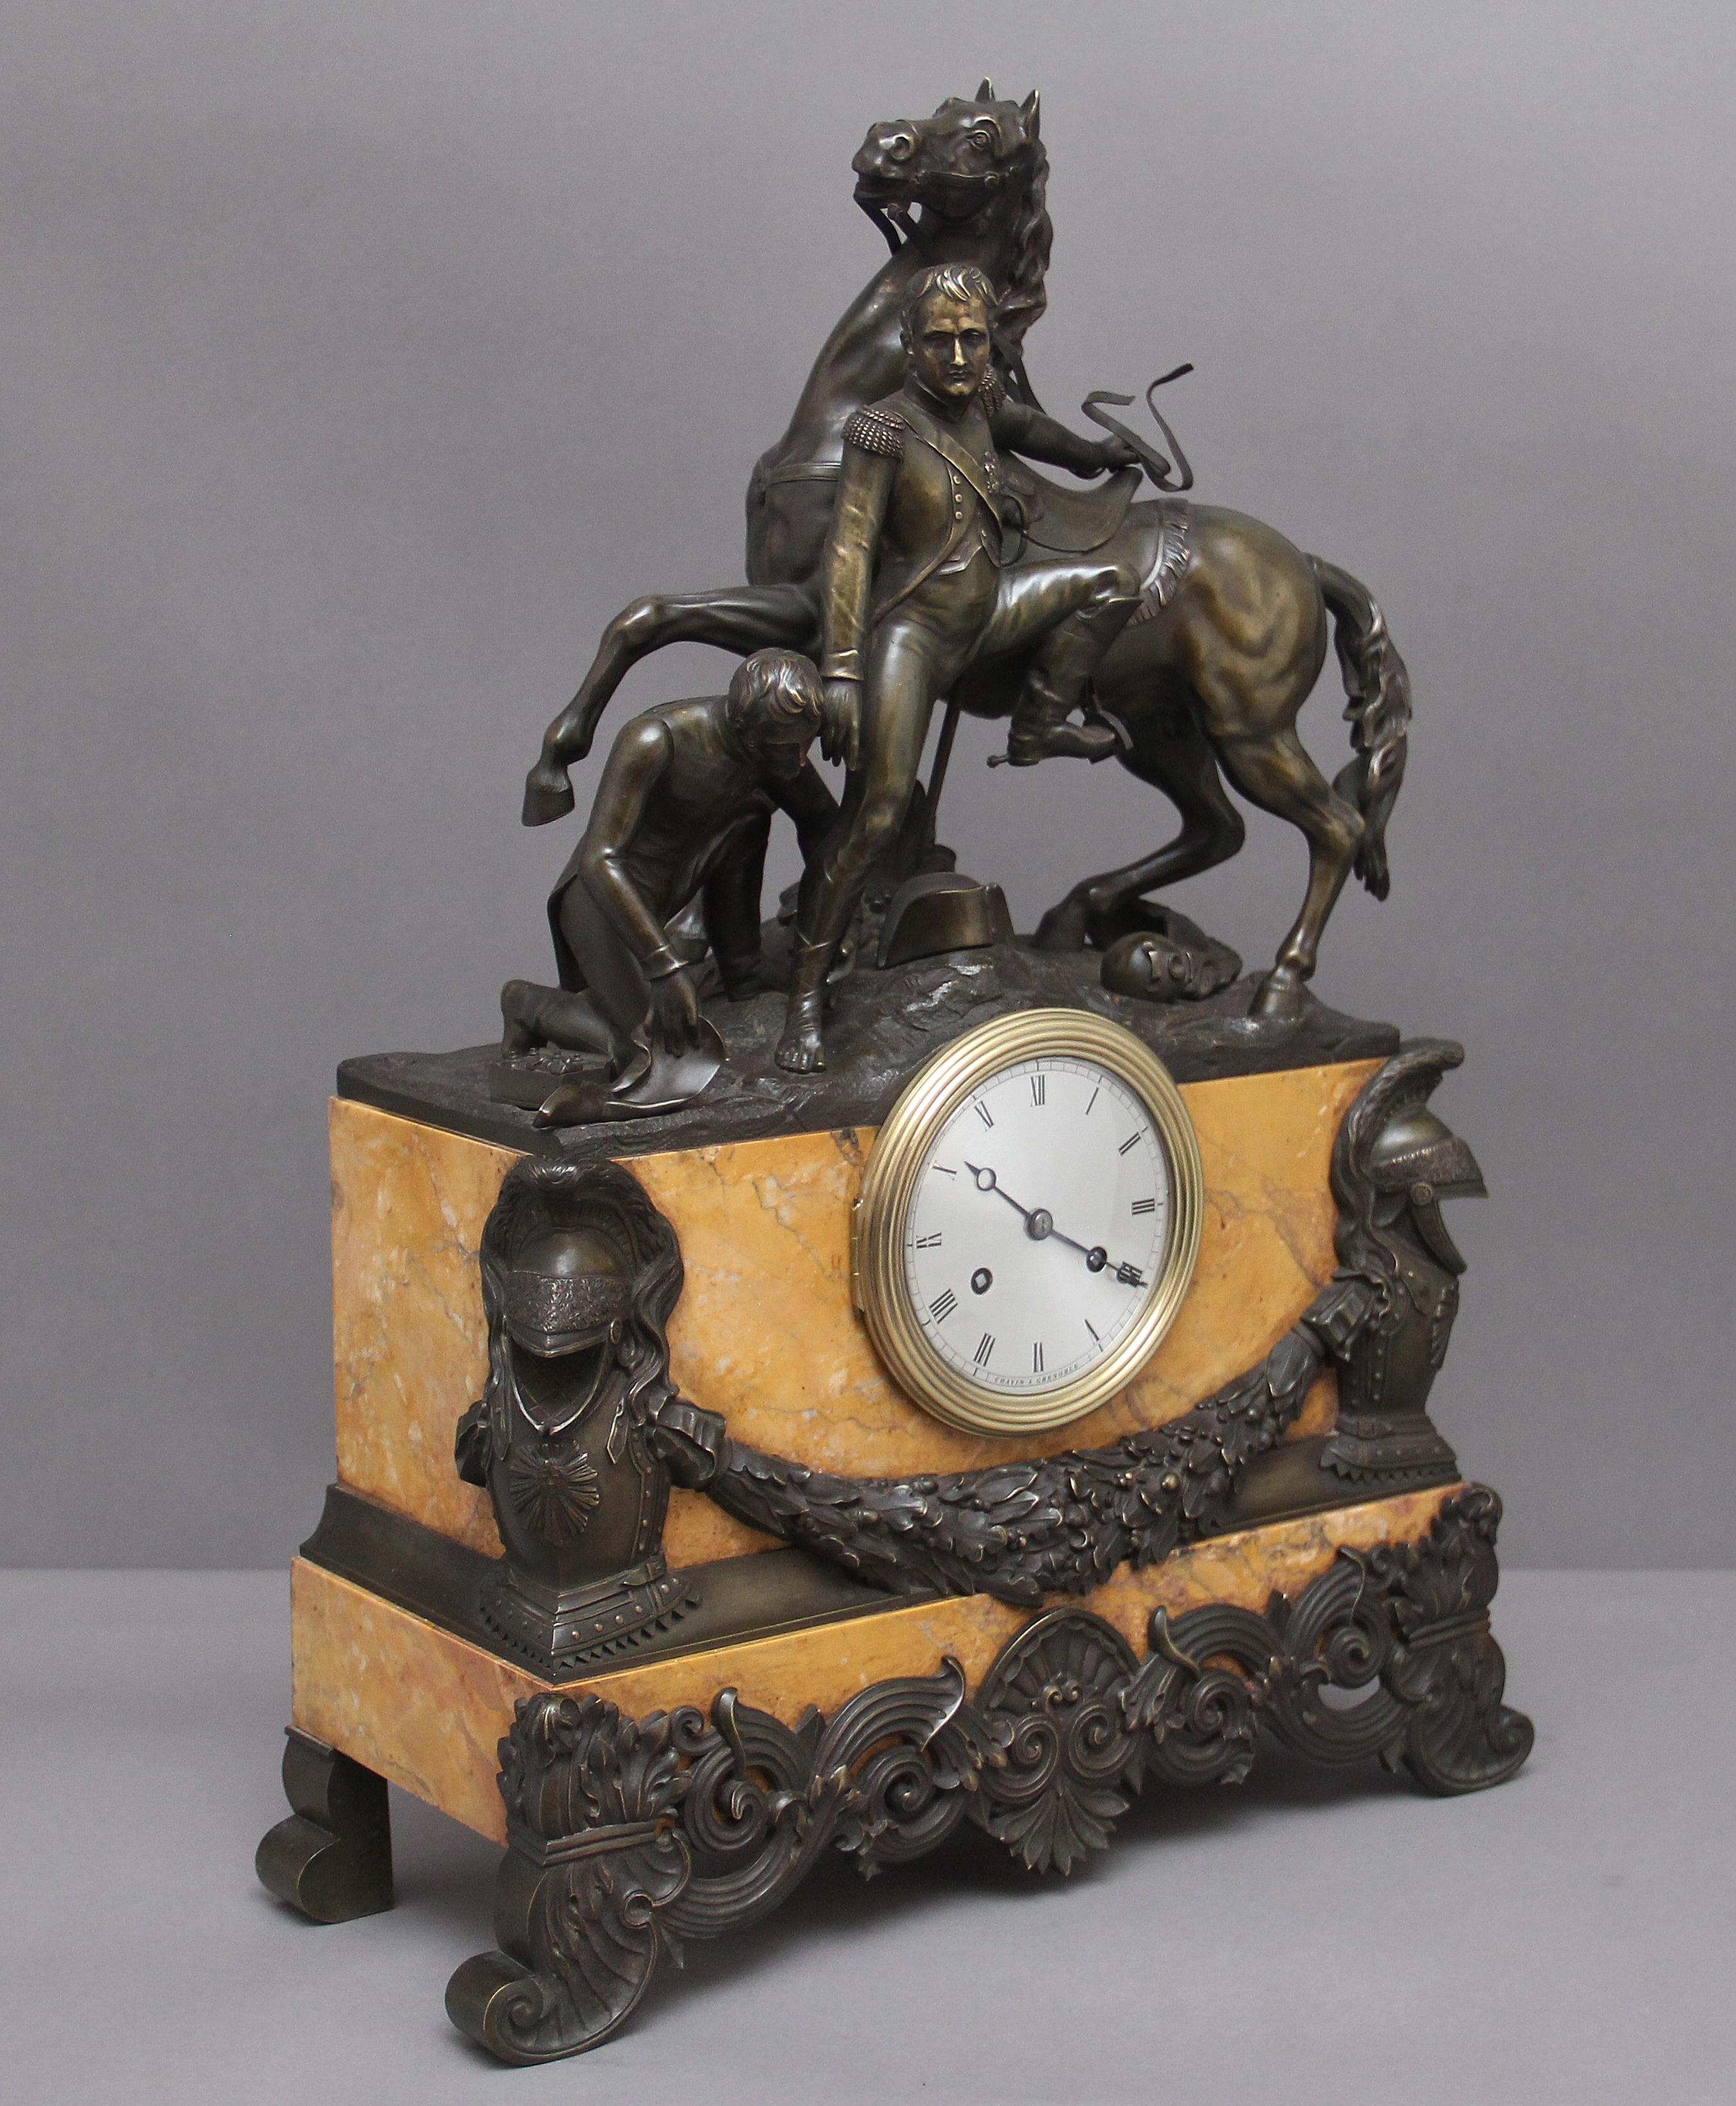 Une fabuleuse pendule de manteau en marbre et bronze français du début du XIXe siècle, le bronze représentant Napoléon aidé à monter à cheval par son palefrenier, des montures et des pieds en bronze d'une superbe qualité. Le mouvement de l'horloge a